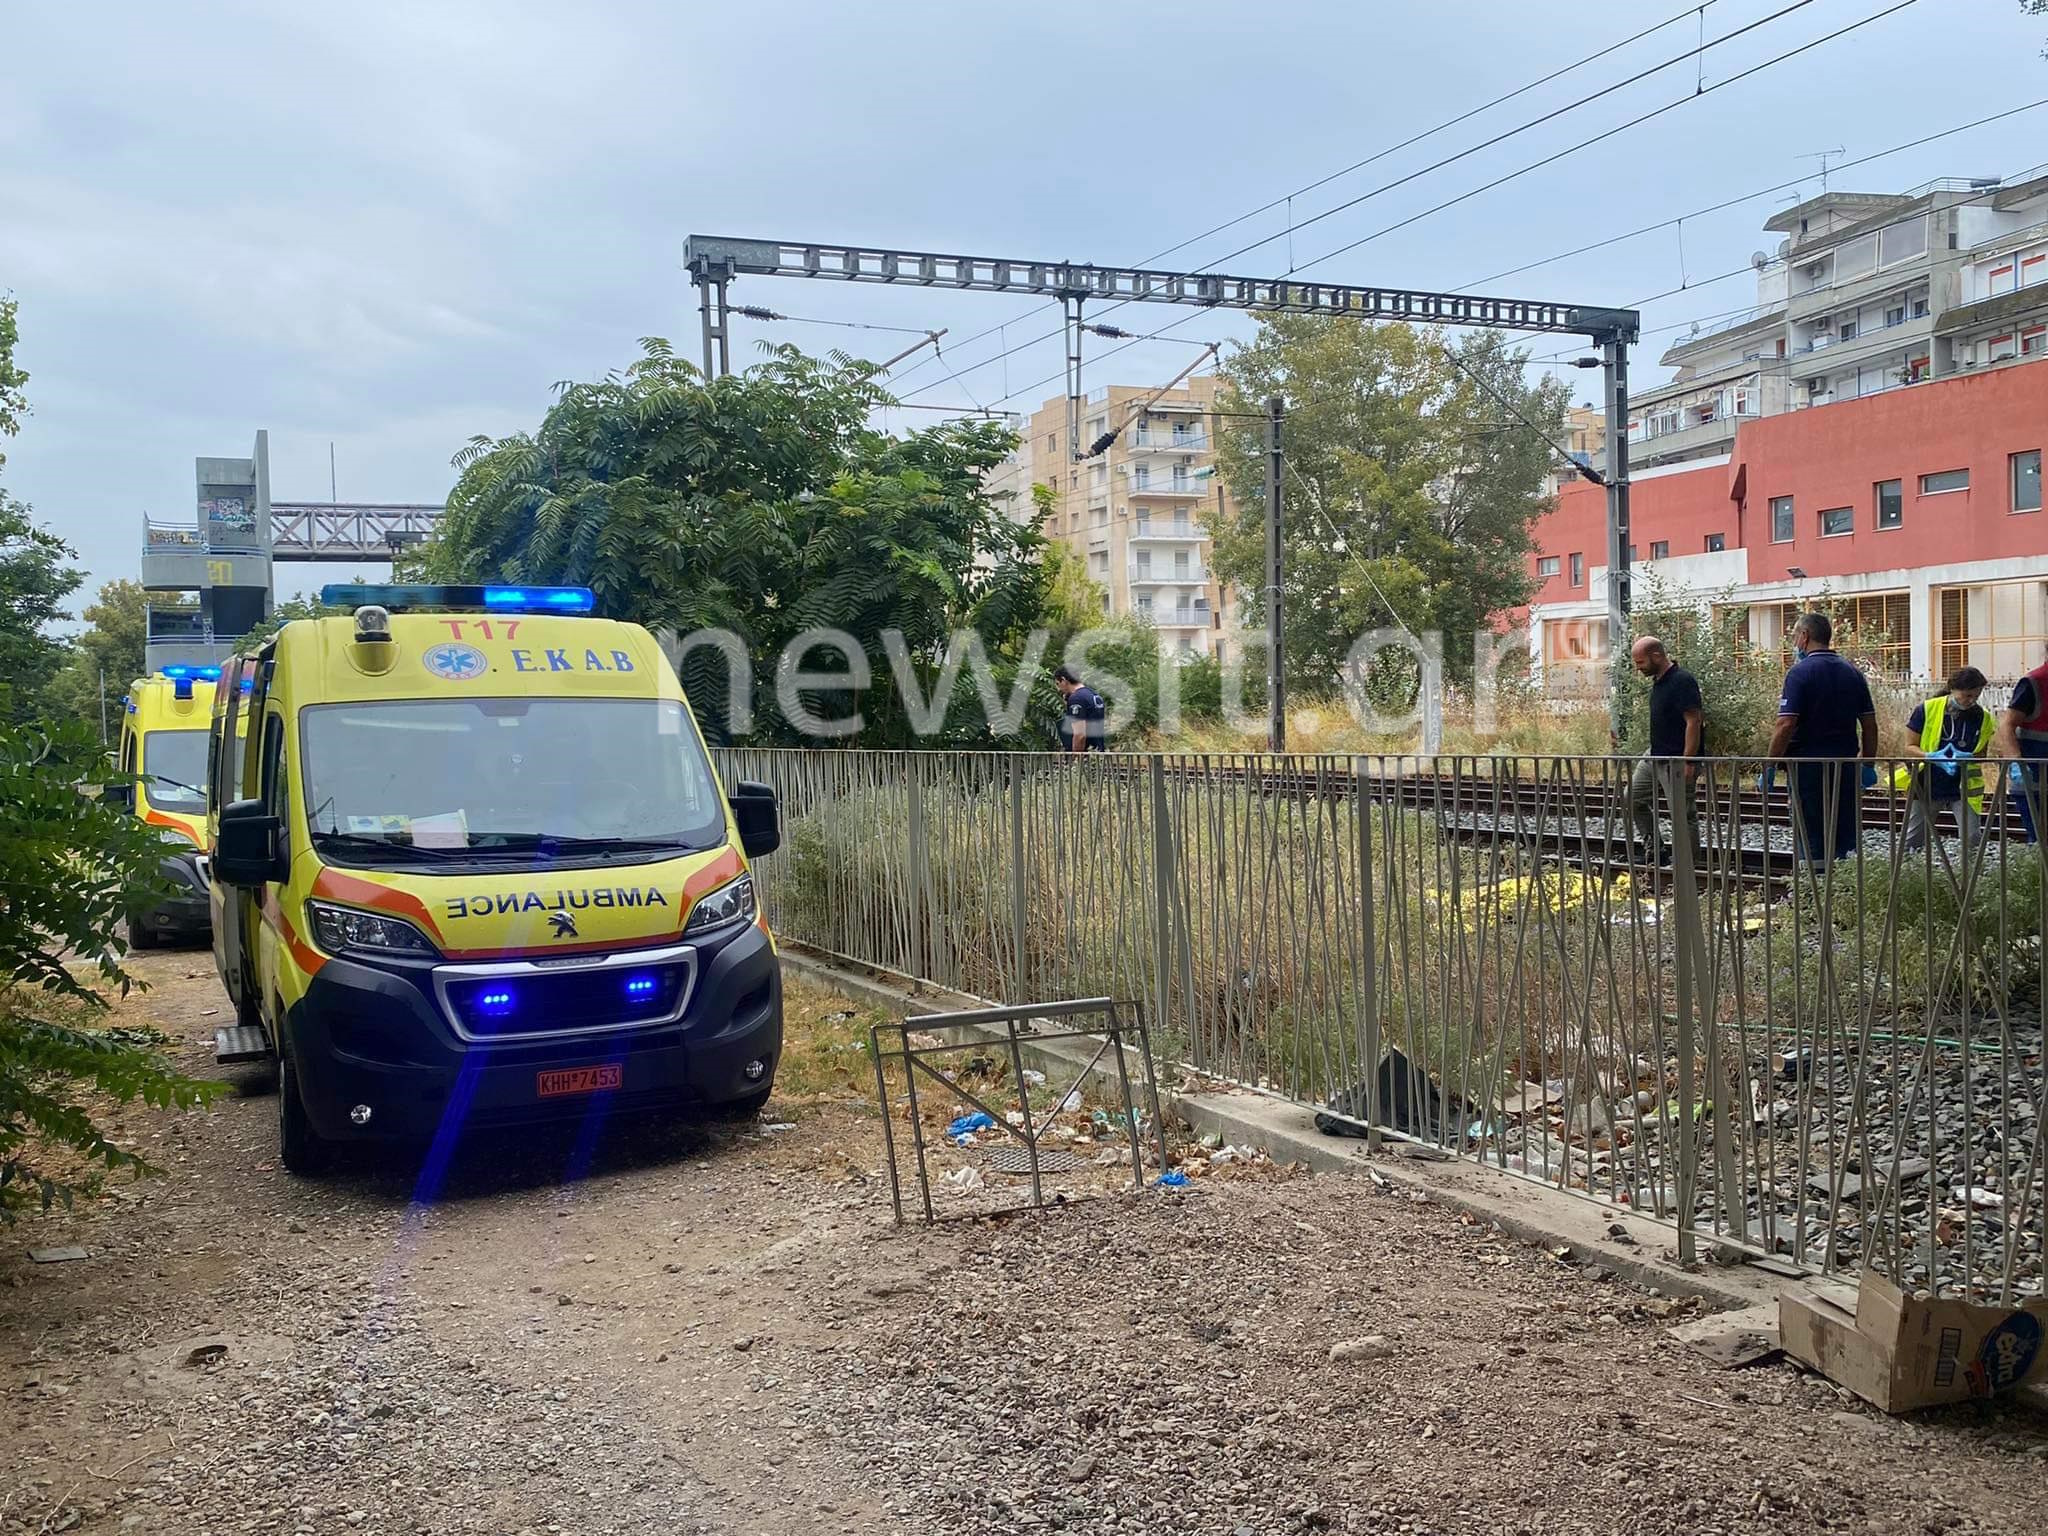 Θεσσαλονίκη: Τρένο του ΟΣΕ παρέσυρε άνθρωπο στις γραμμές λίγο έξω από την πόλη